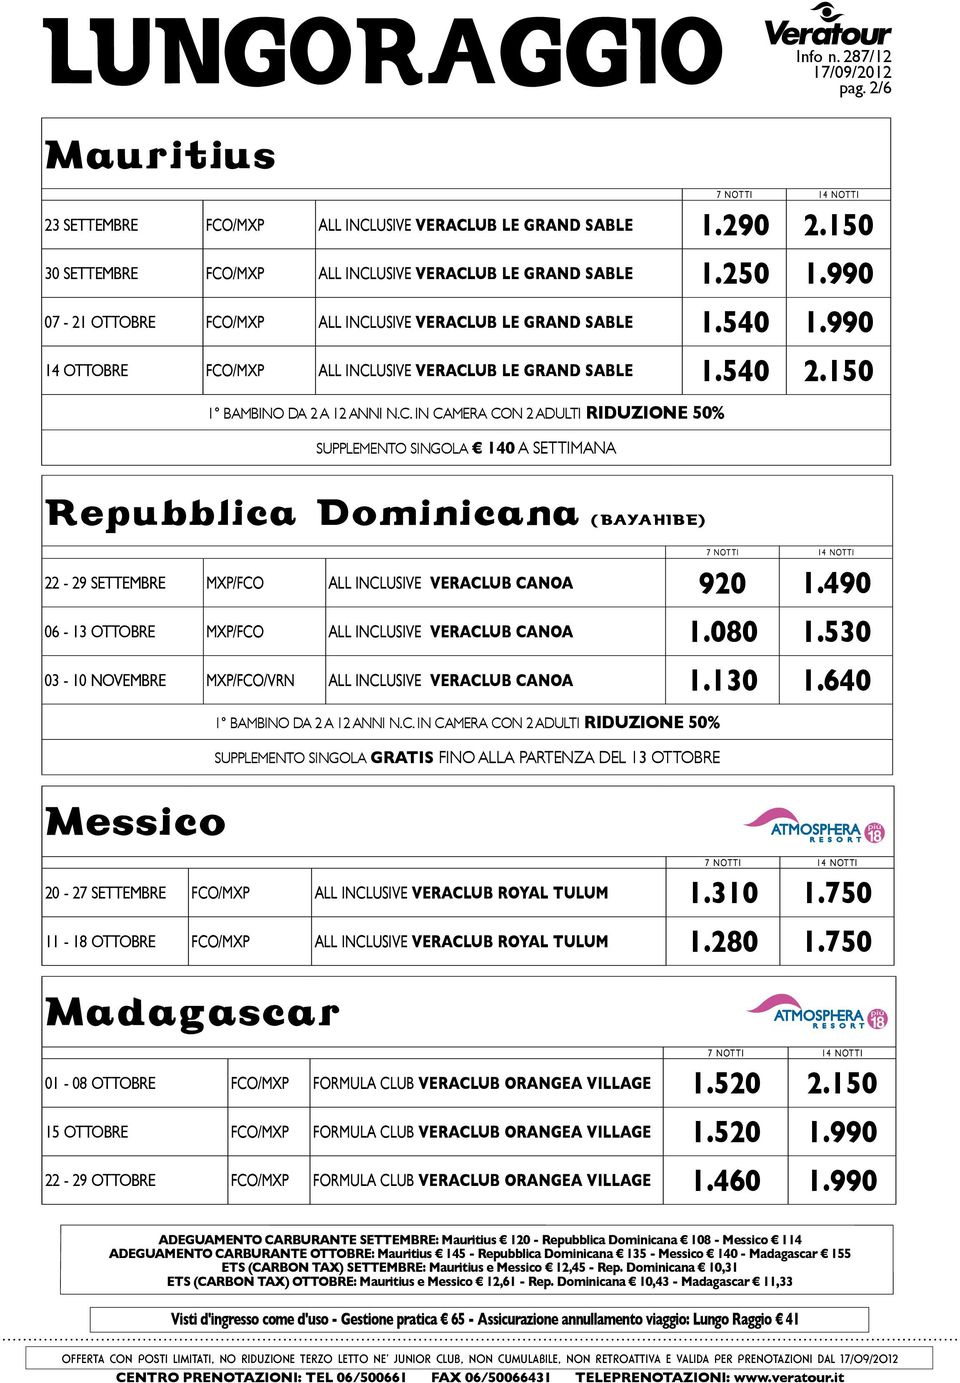 150 supplemento singola 140 A SETTIMANA repubblica dominicana (bayahibe) 22-29 settembre mxp/fco All Inclusive veraclub canoa 920 1.490 06-13 ottobre mxp/fco All Inclusive veraclub canoa 1.080 1.